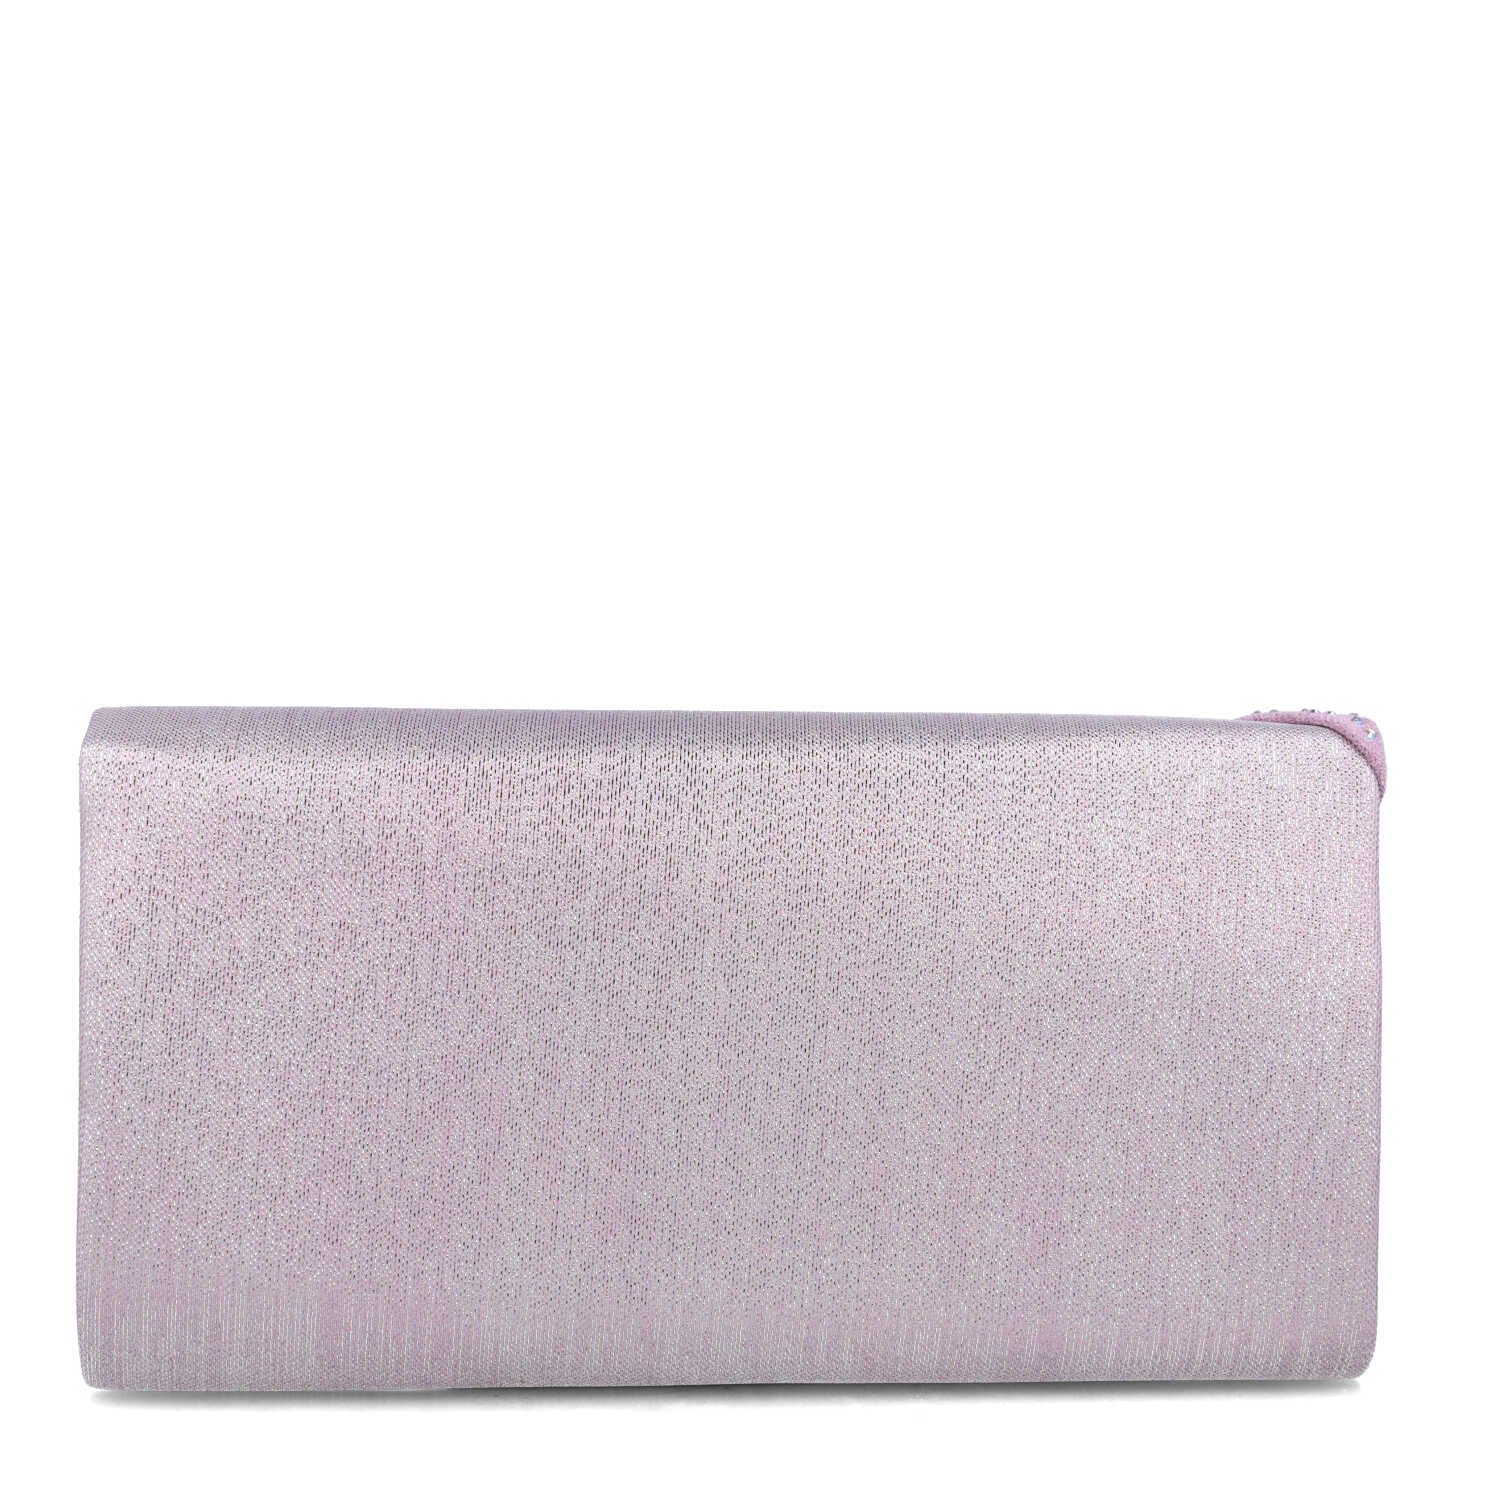 Purple Multi-Color Clutch Bag